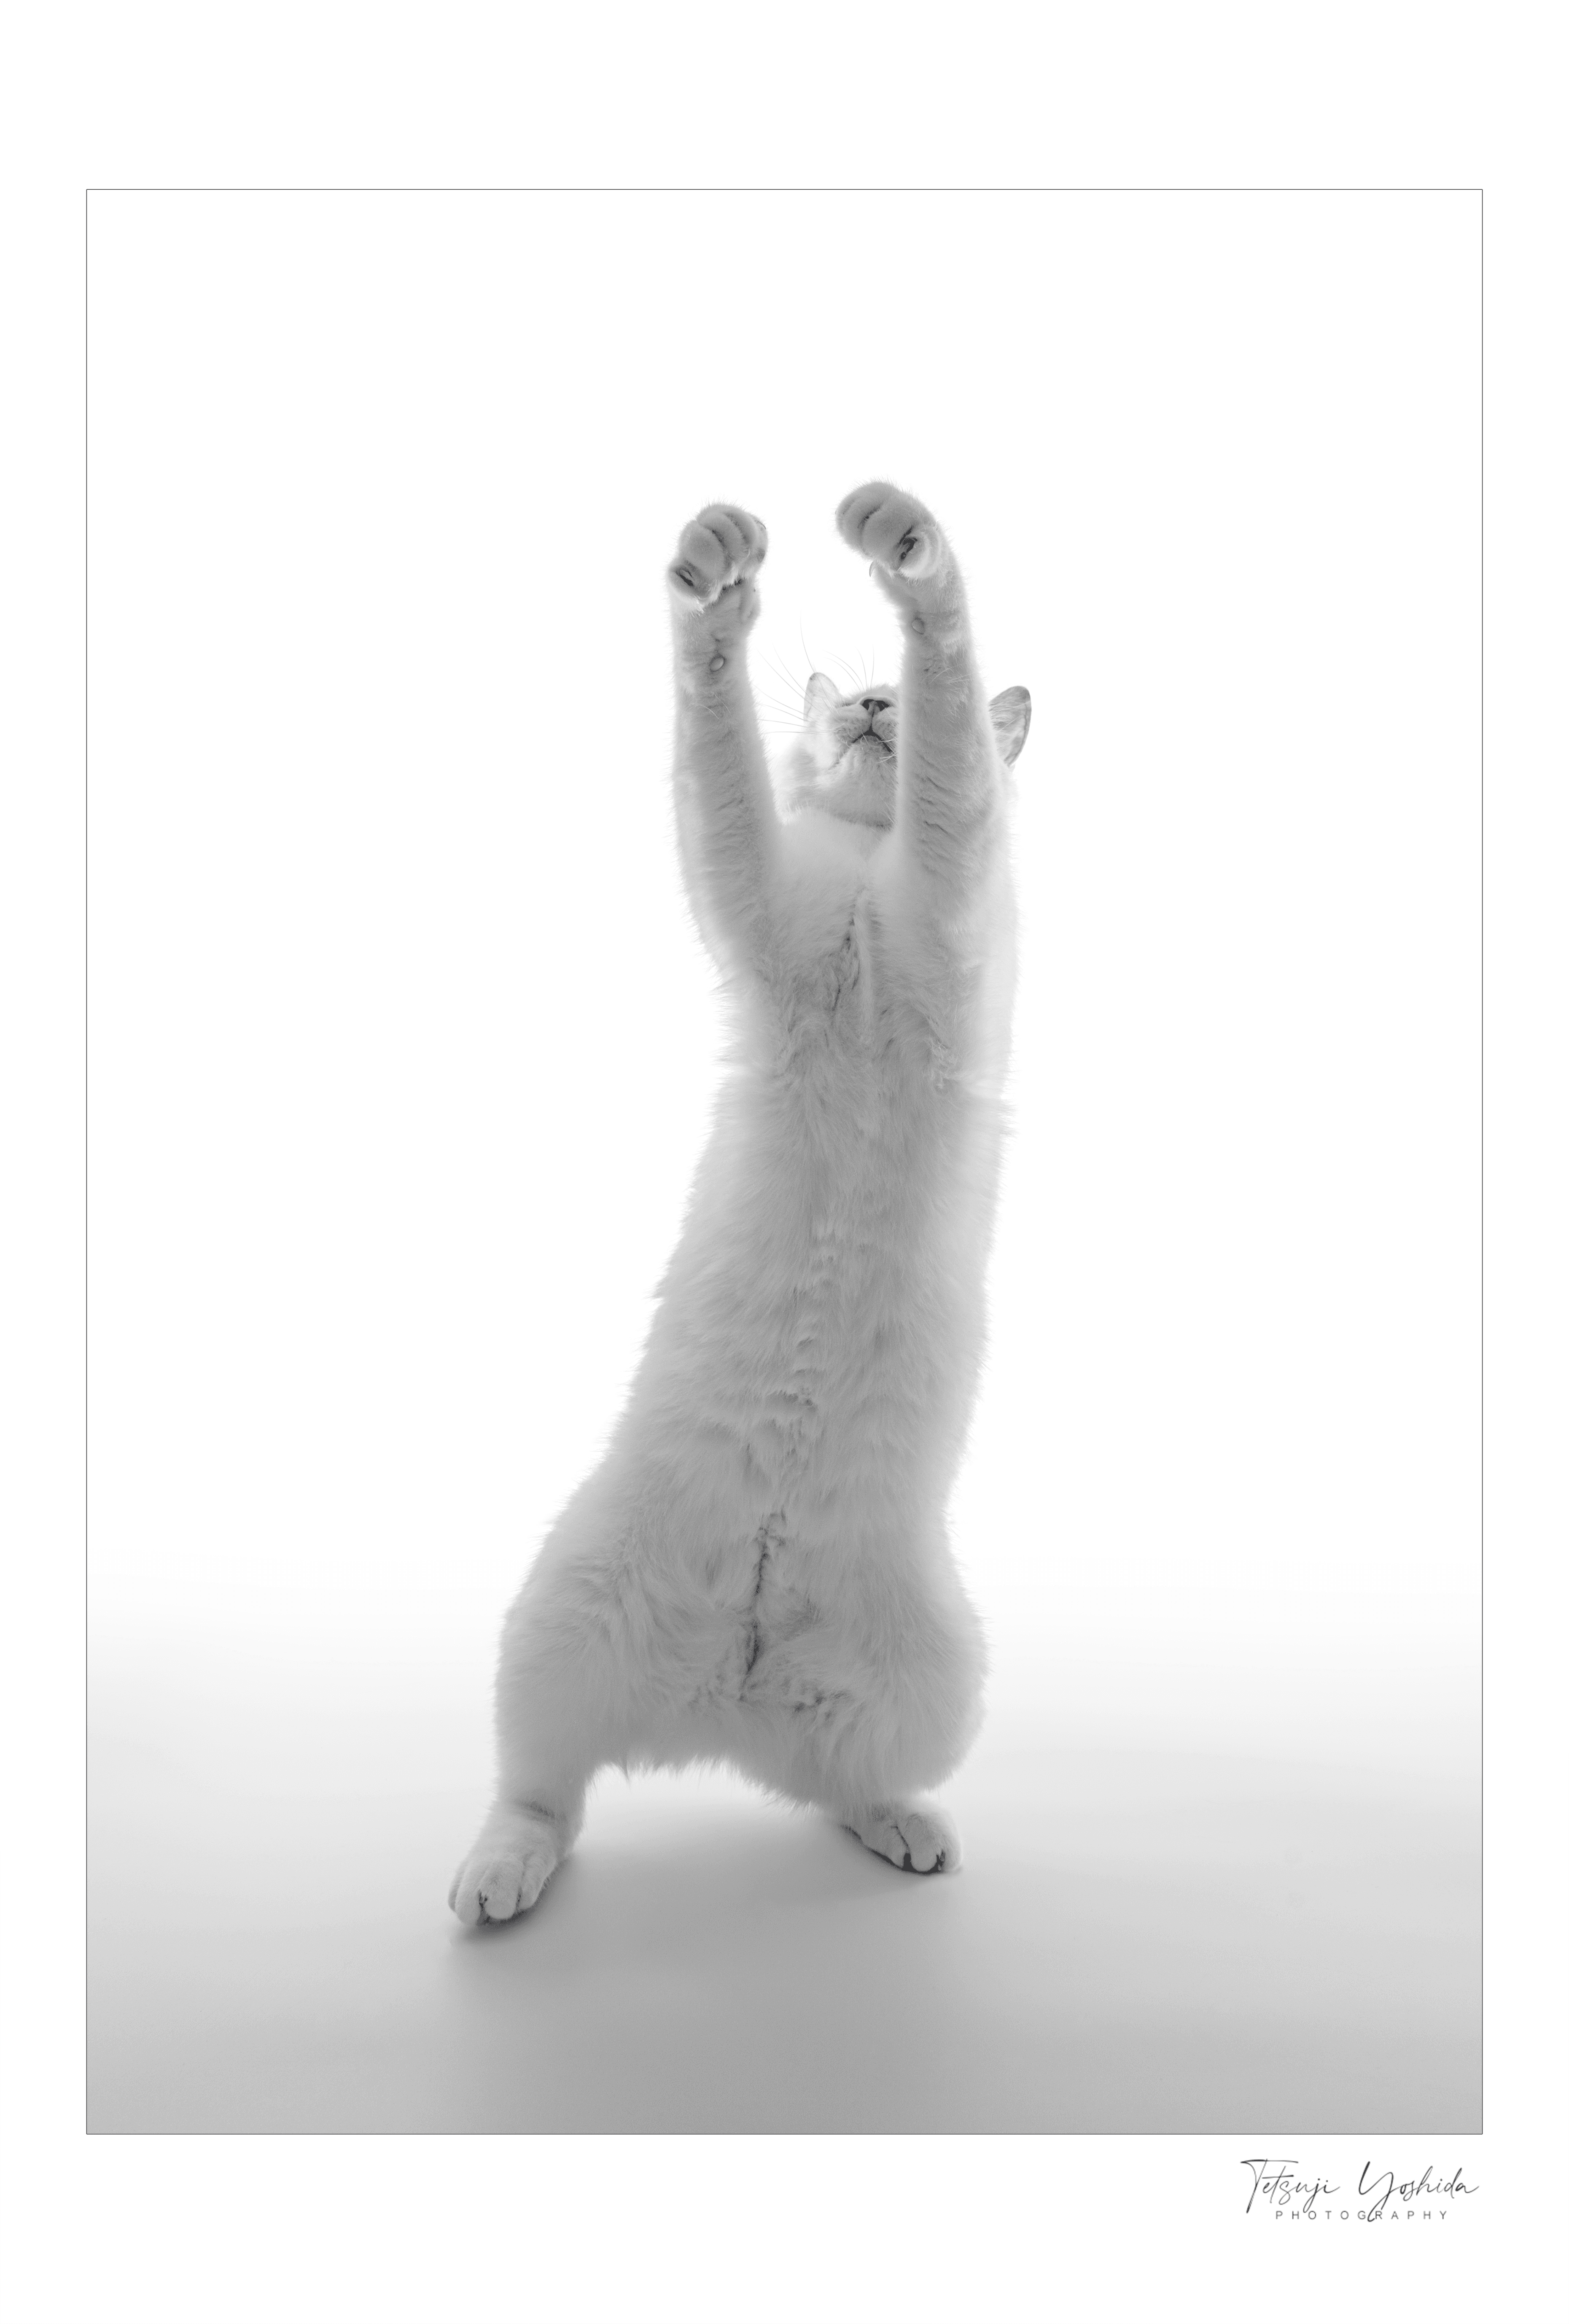 Teto the white cat "Dancing"